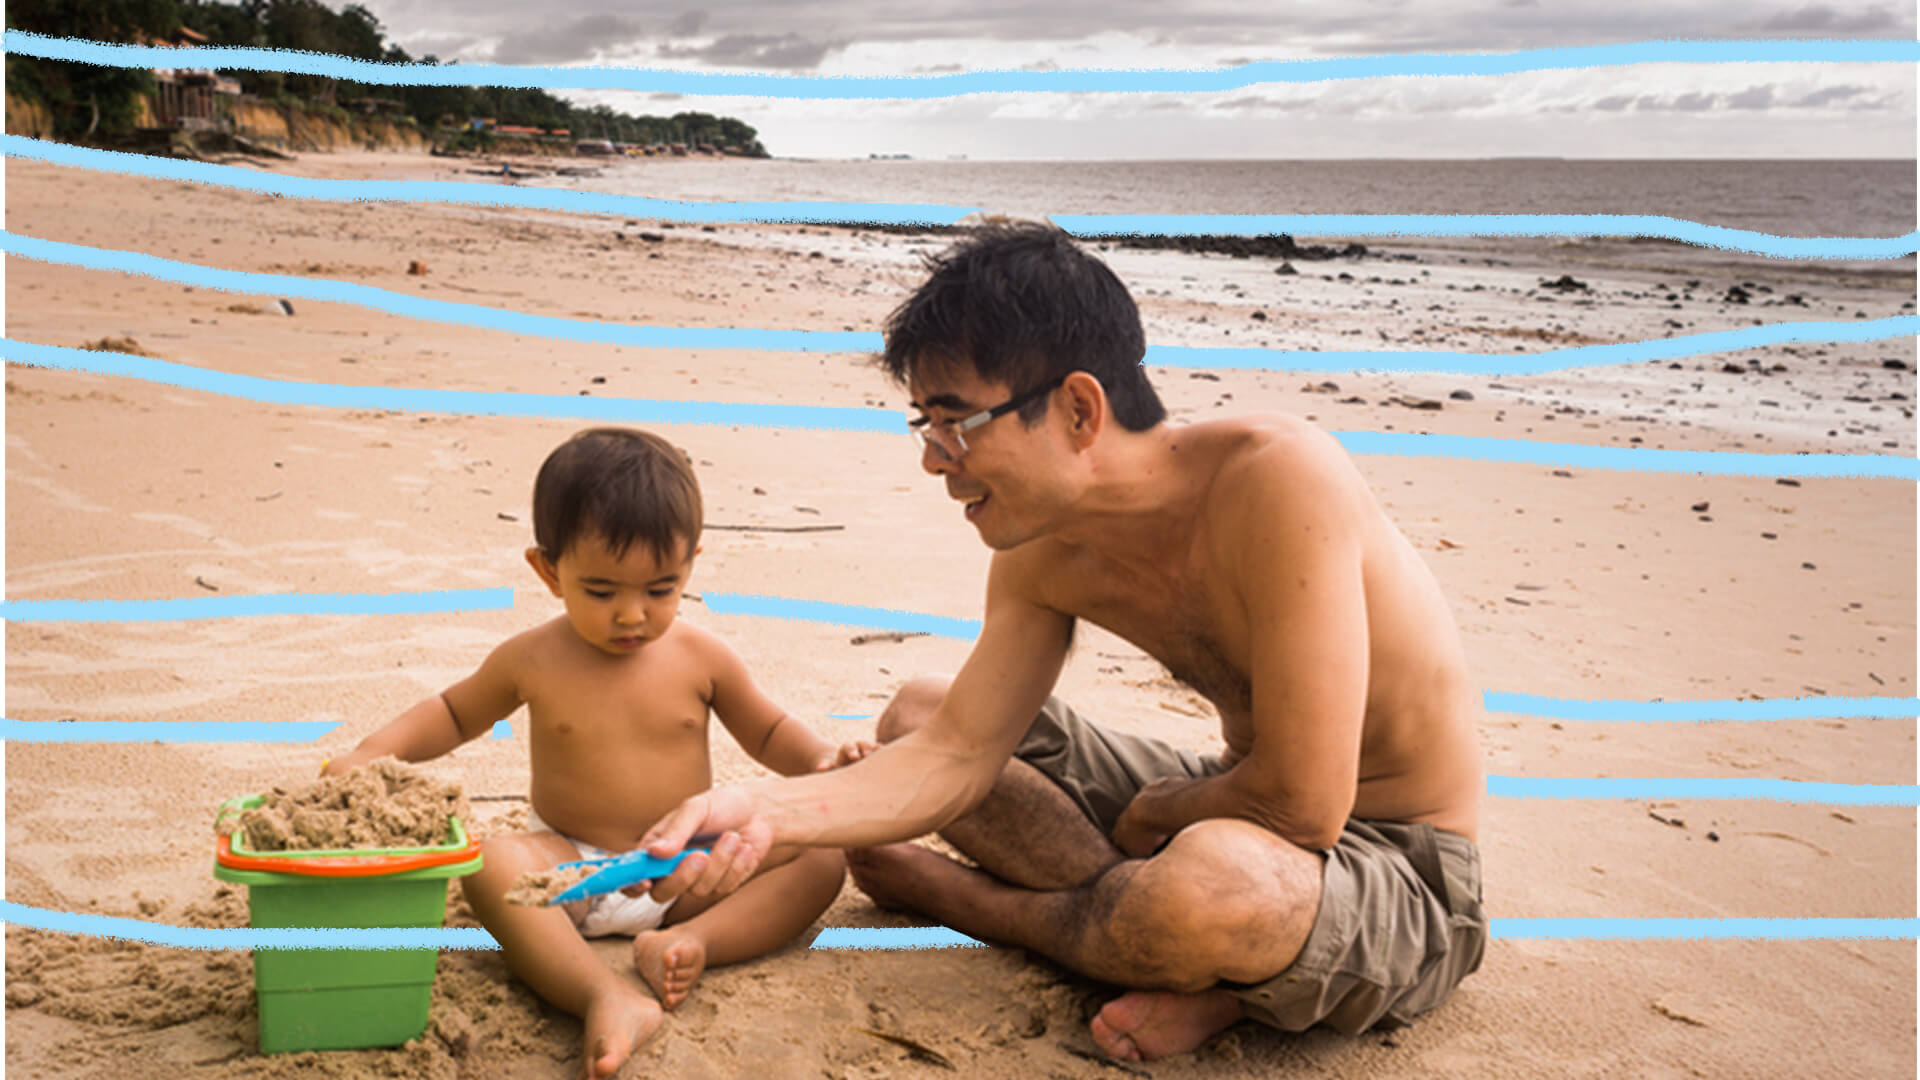 Menino e homem sentados na areia da praia. Vê-se o mar ao fundo.